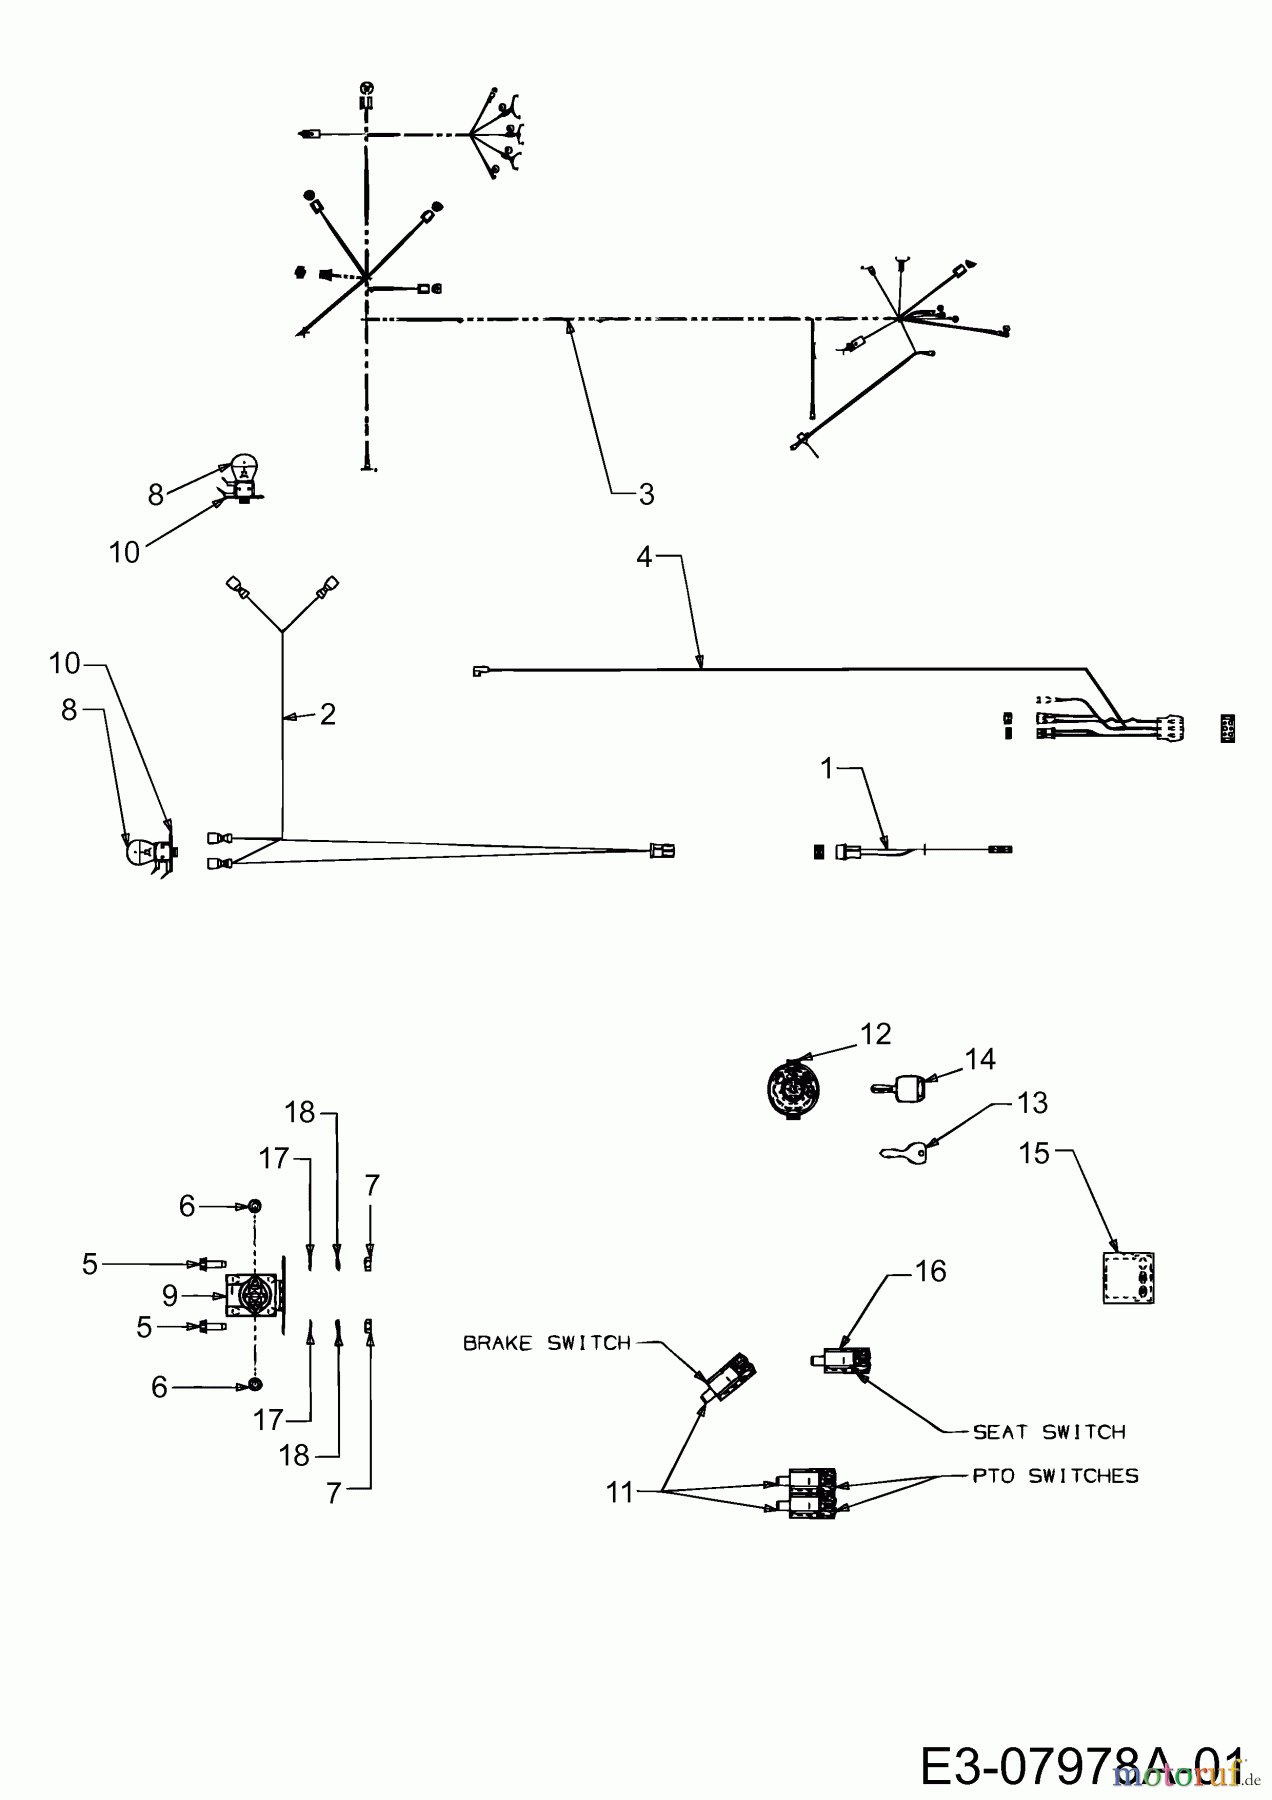  Gutbrod Rasentraktoren GLX 107 SALK 13BI506G690  (2003) Elektroteile